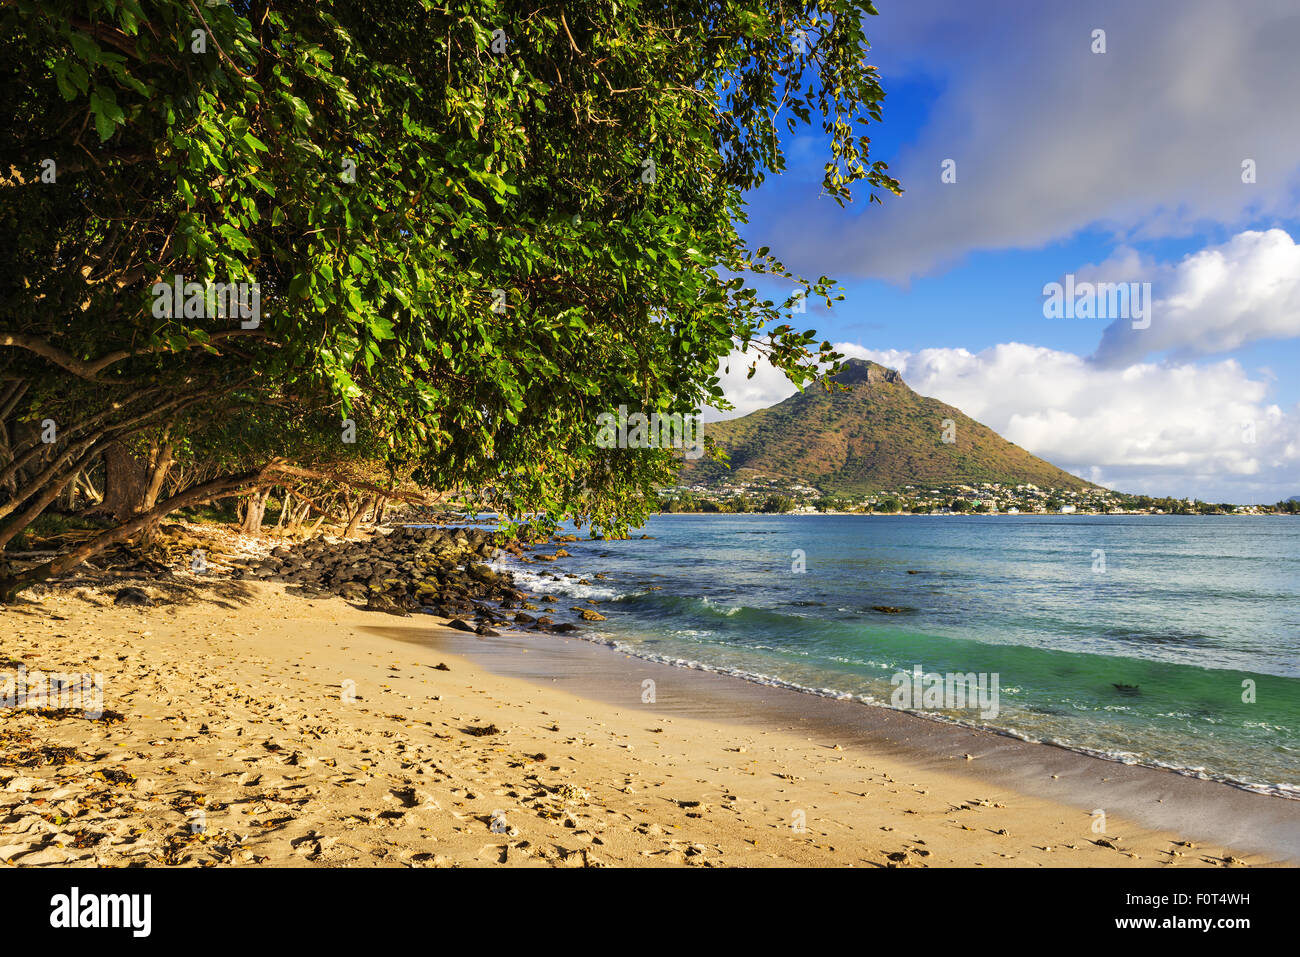 Plage de sable et de rochers dans la baie de Tamarin, Wolmar, Flic en Flac, Maurice, océan Indien Banque D'Images